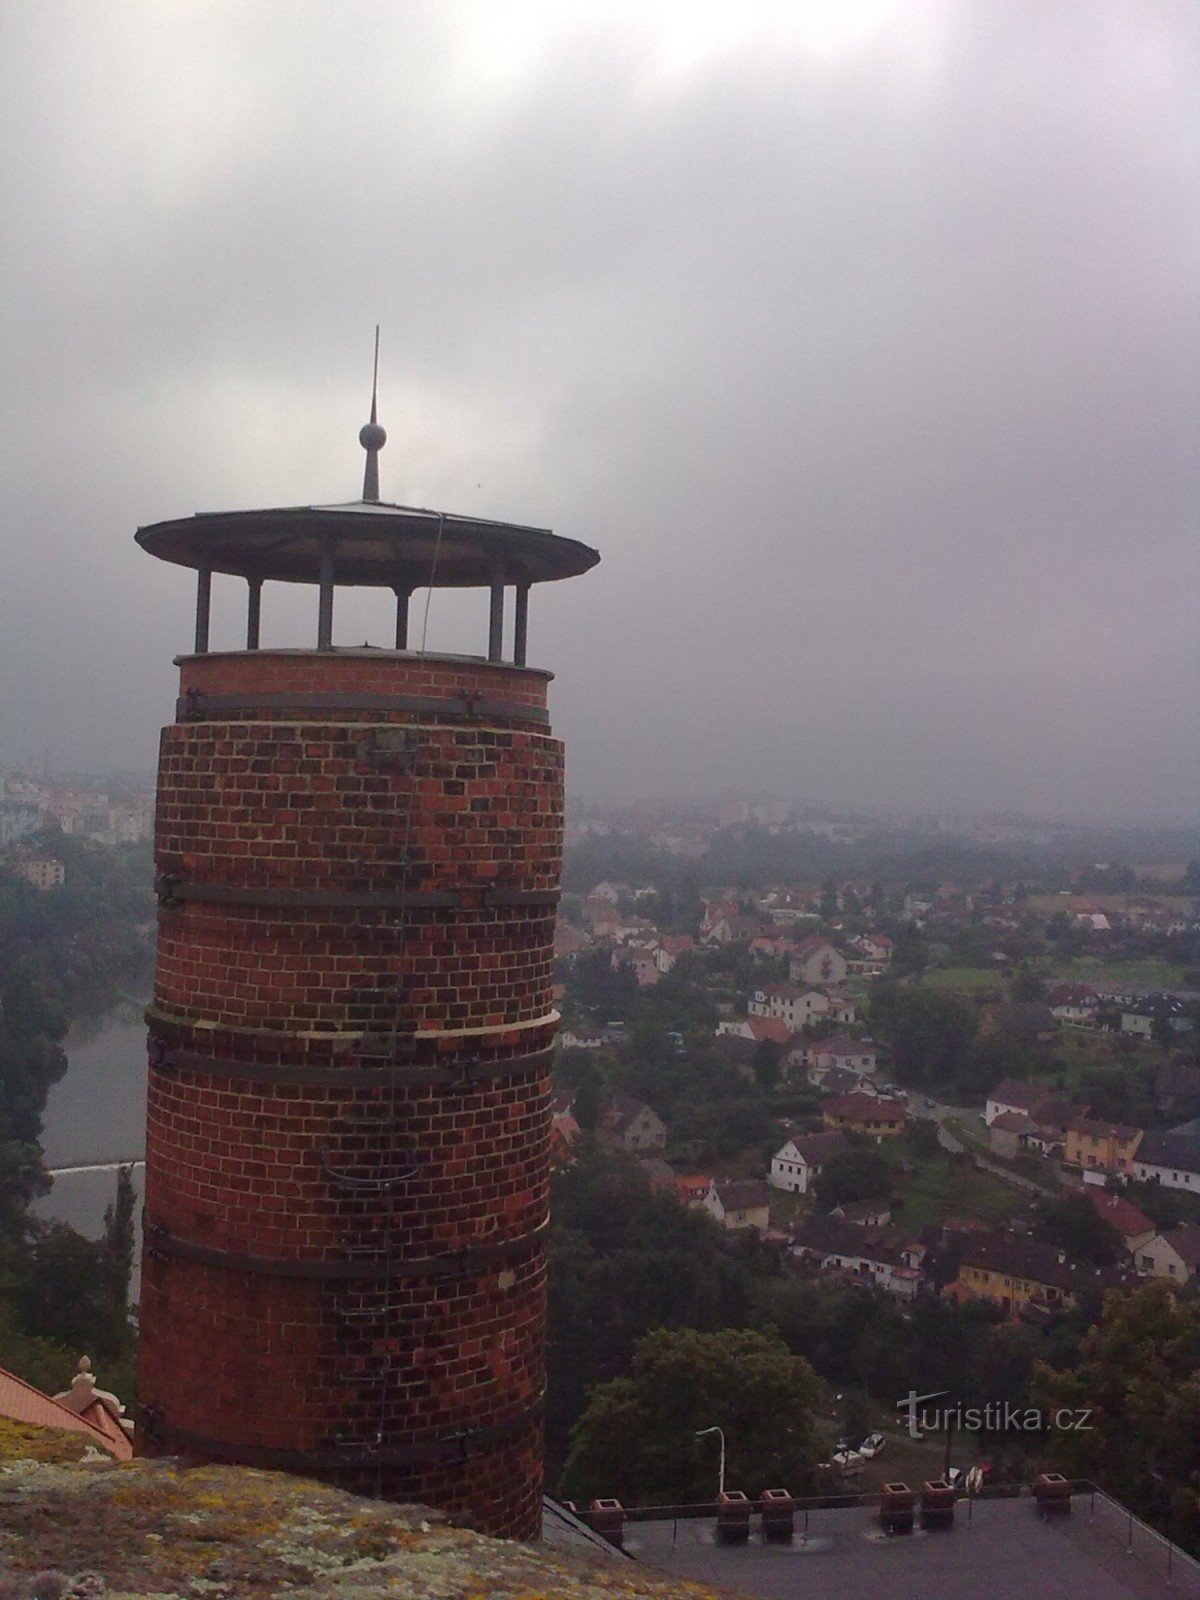 Uitzicht vanaf Kotnov naar de schoorsteen en wolken